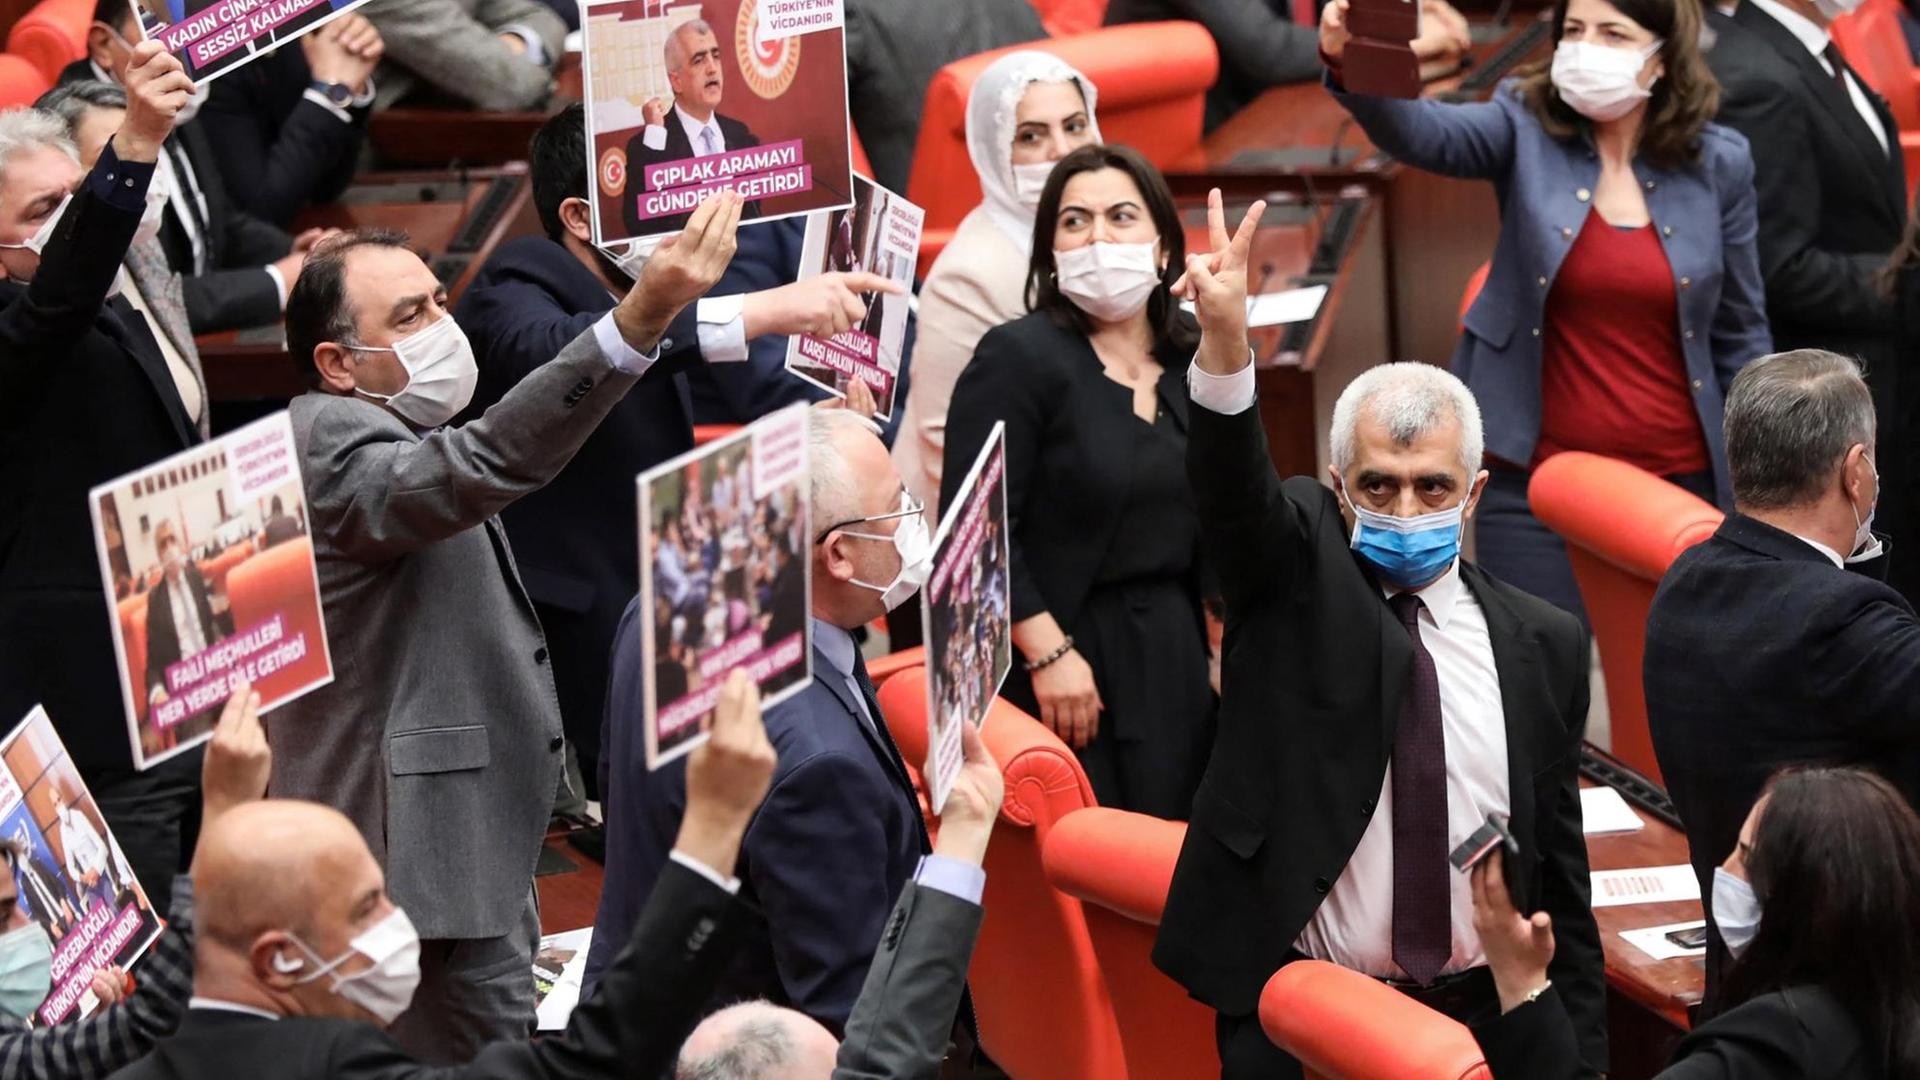 Der Abgeordnete Ömer Faruk Gergerlioglu von der Kurdenpartei HDP wird vom Parlamentspräsidium seines Mandats entkleidet und aus dem Saal geworfen. Er erhält Unterstützung von Abgeordneten seiner Partei.